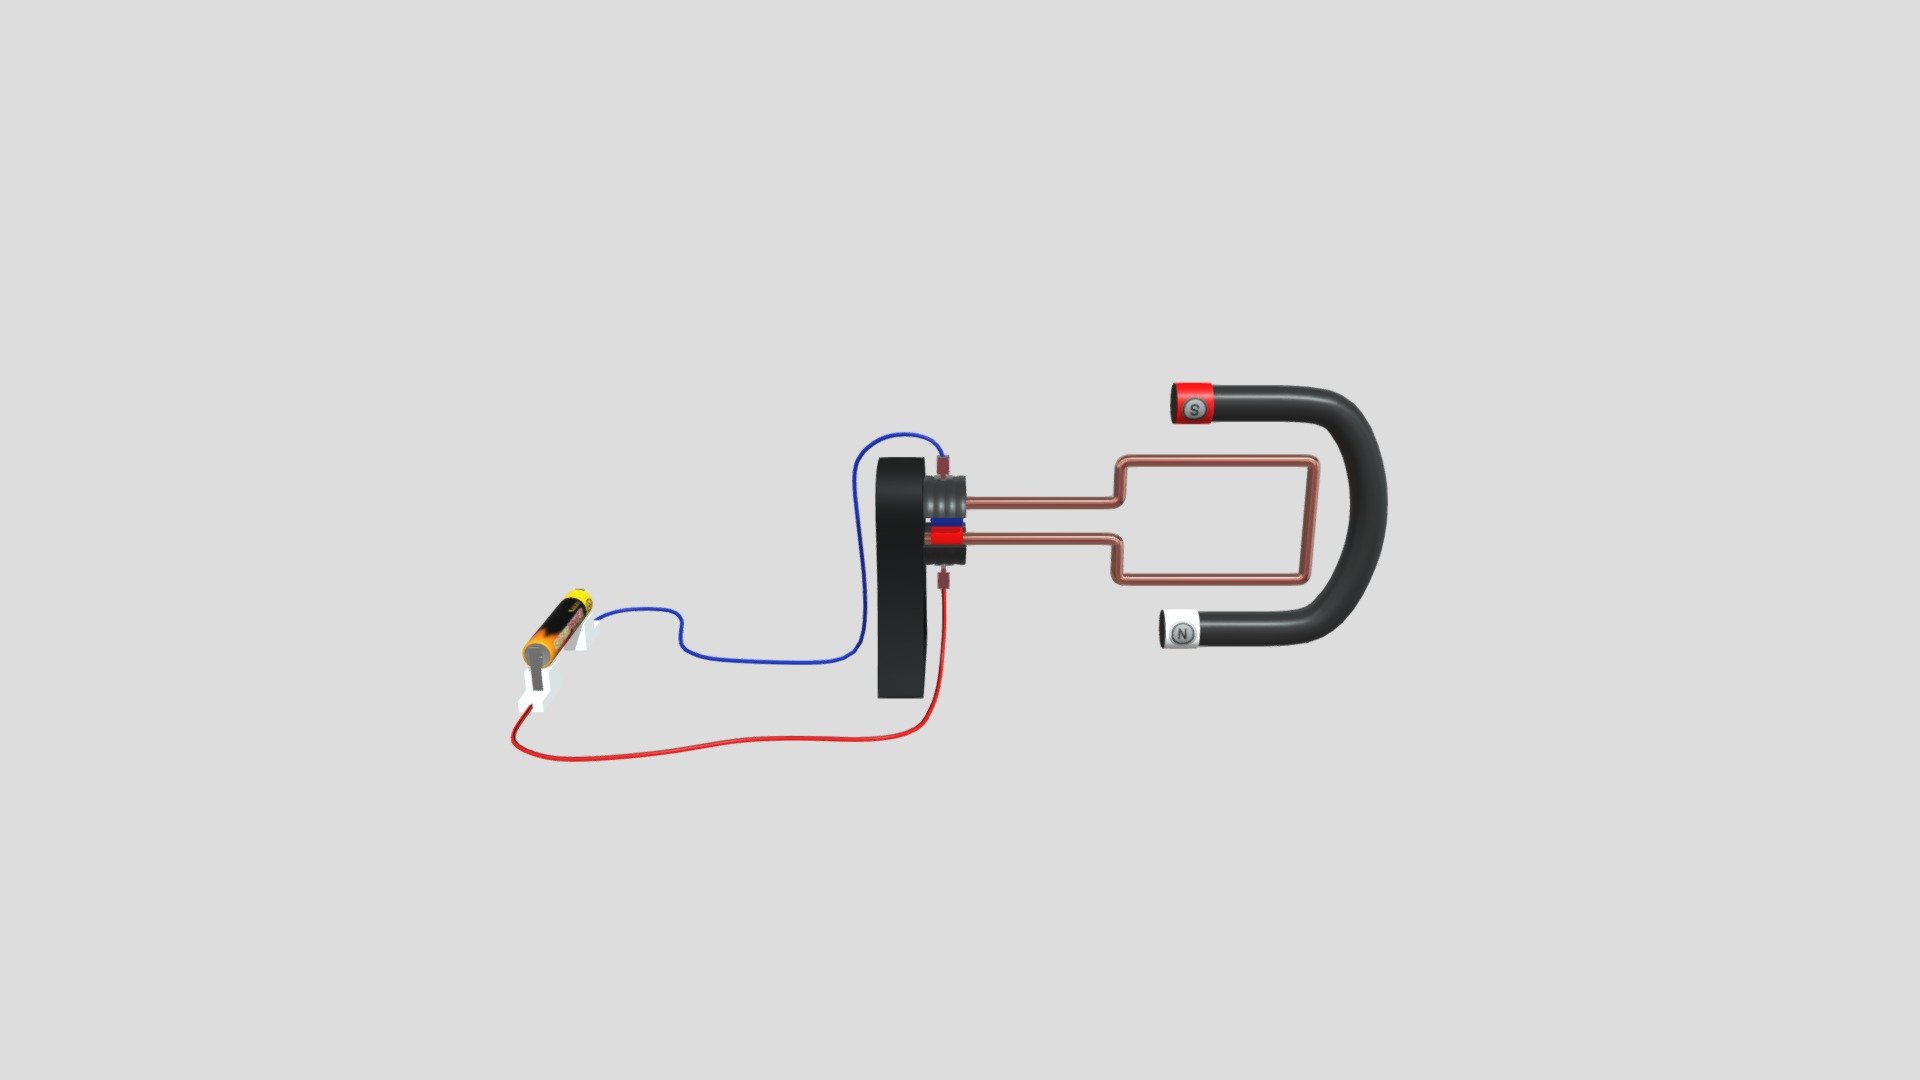 DC motor generator - 3D model by thakoor64 (@thakoor64) [d9454ef]